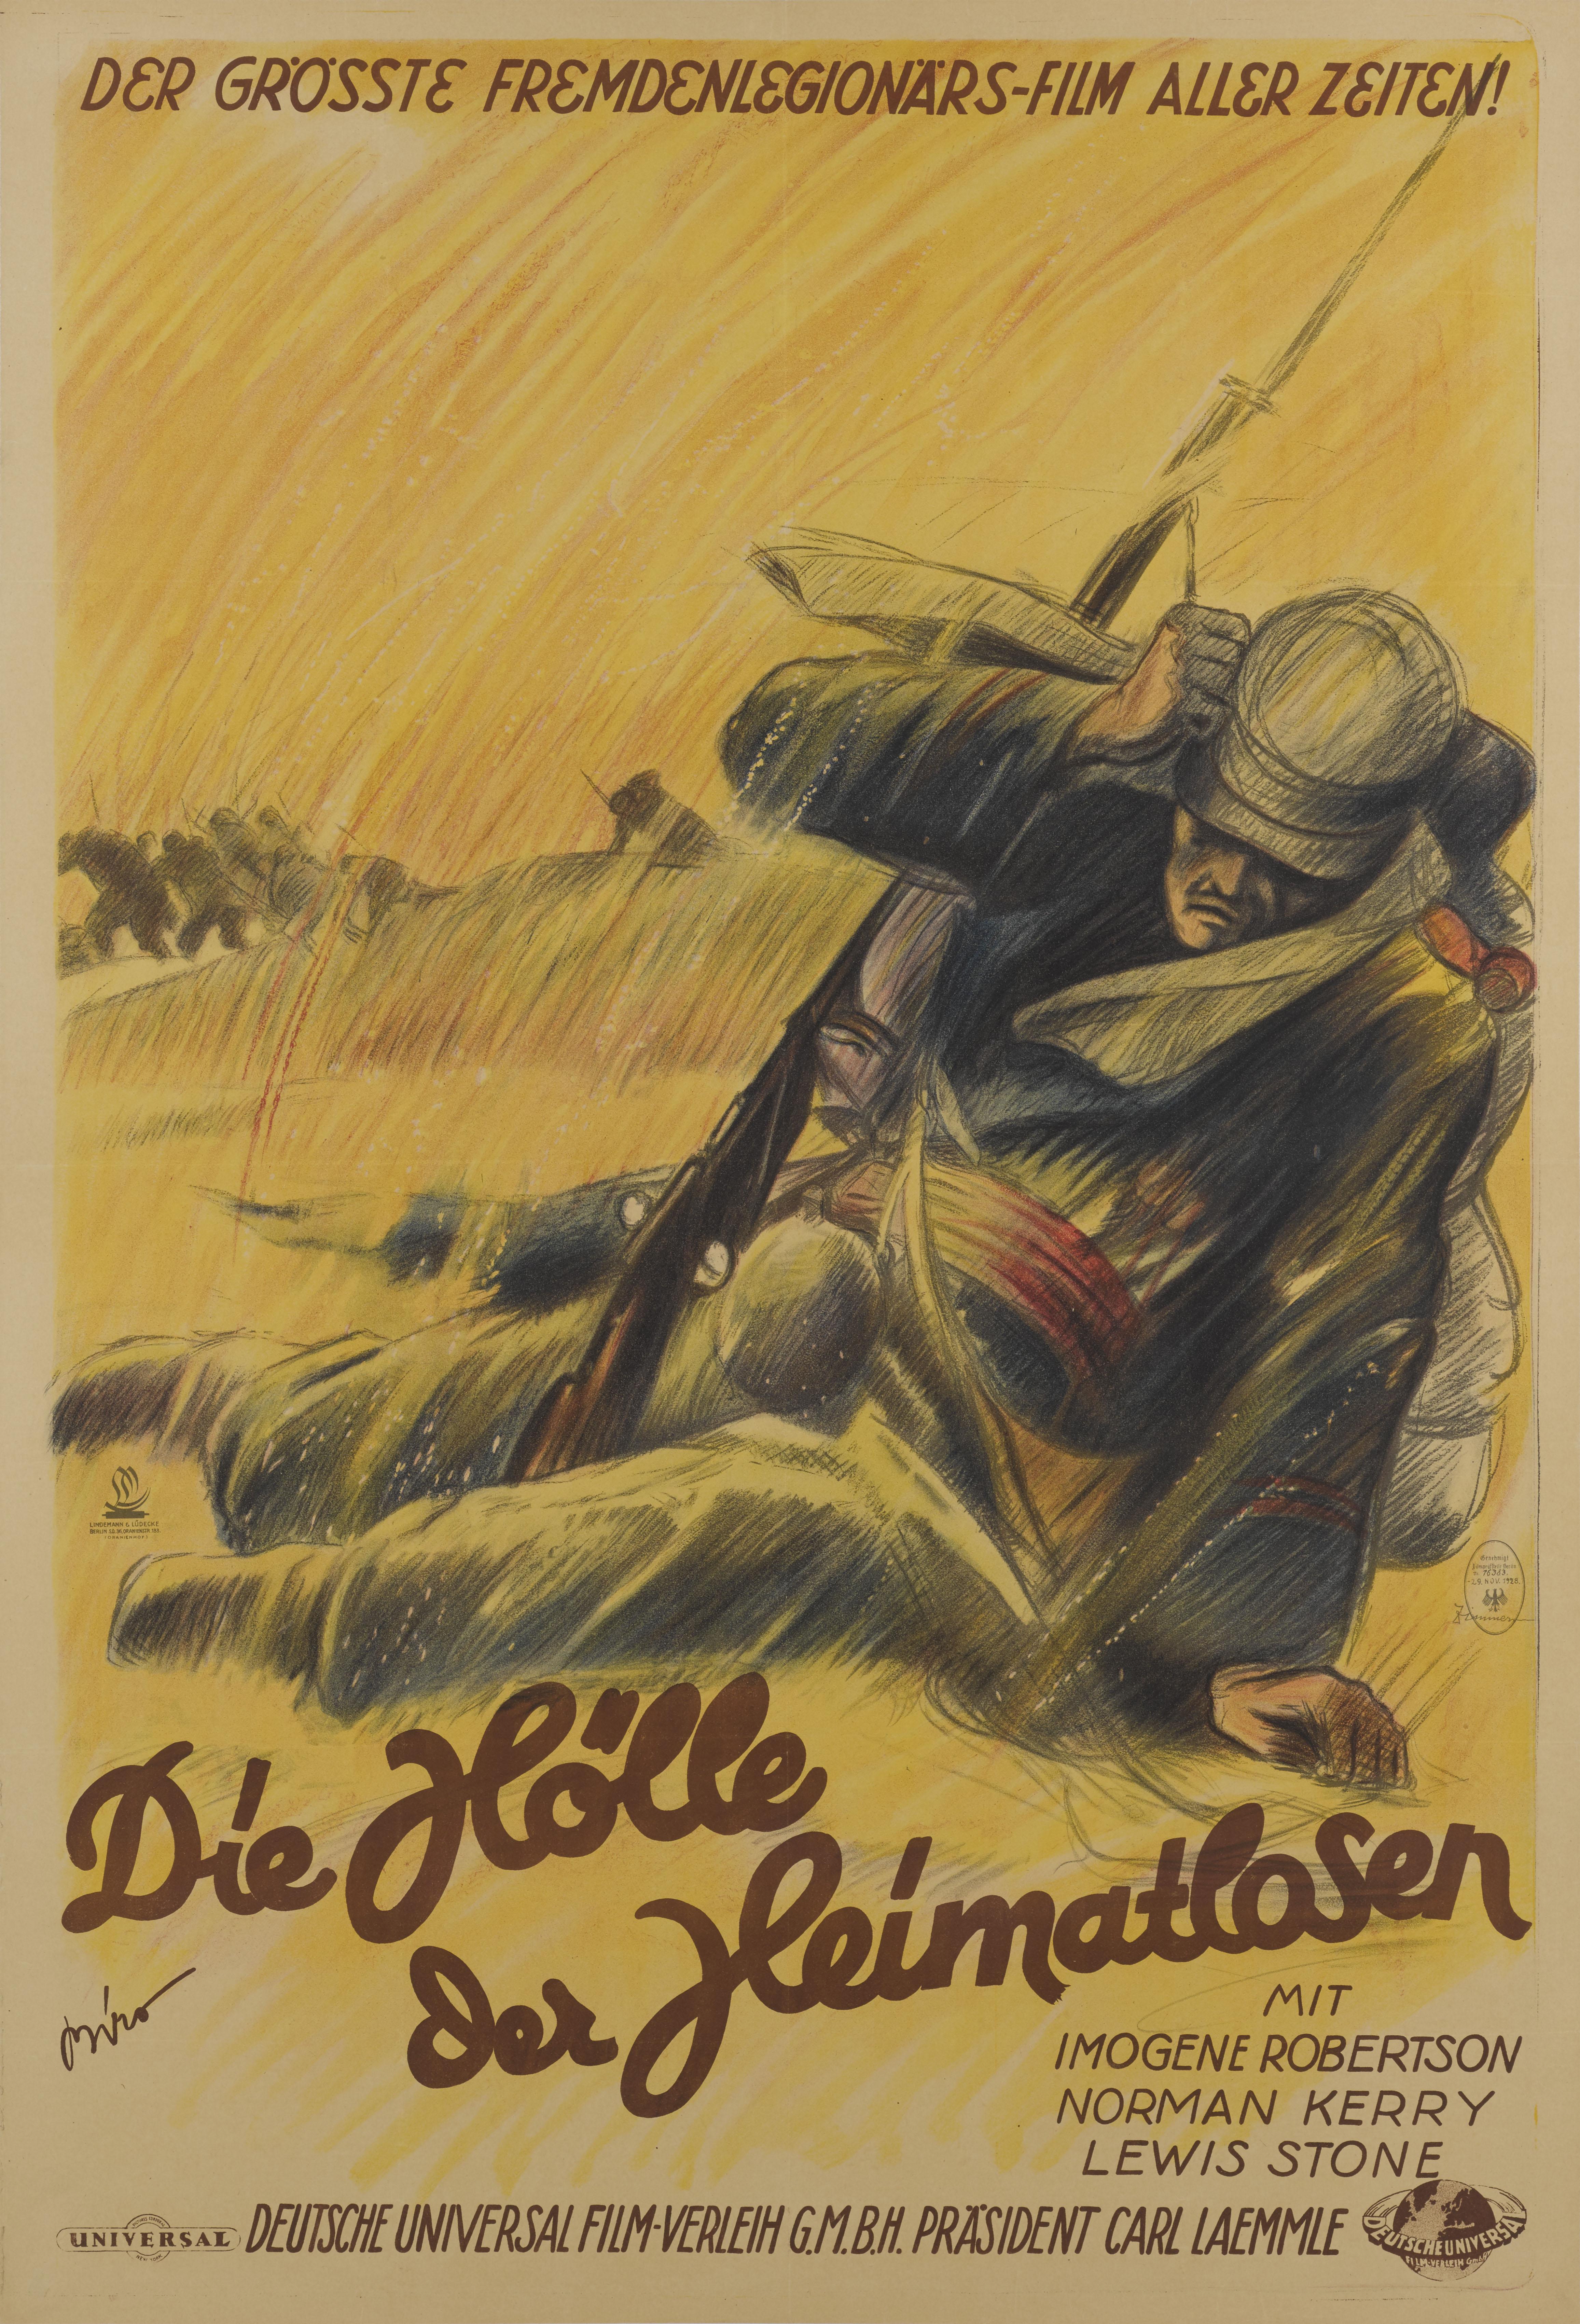 Une affiche originale allemande incroyablement rare pour le film muet de 1928 La Légion étrangère. Ce film a été réalisé par Edward Sloman et met en vedette Norman Kerry.
L'affiche a été conçue par l'artiste hongrois Mihaly Biro (1886-1948) et